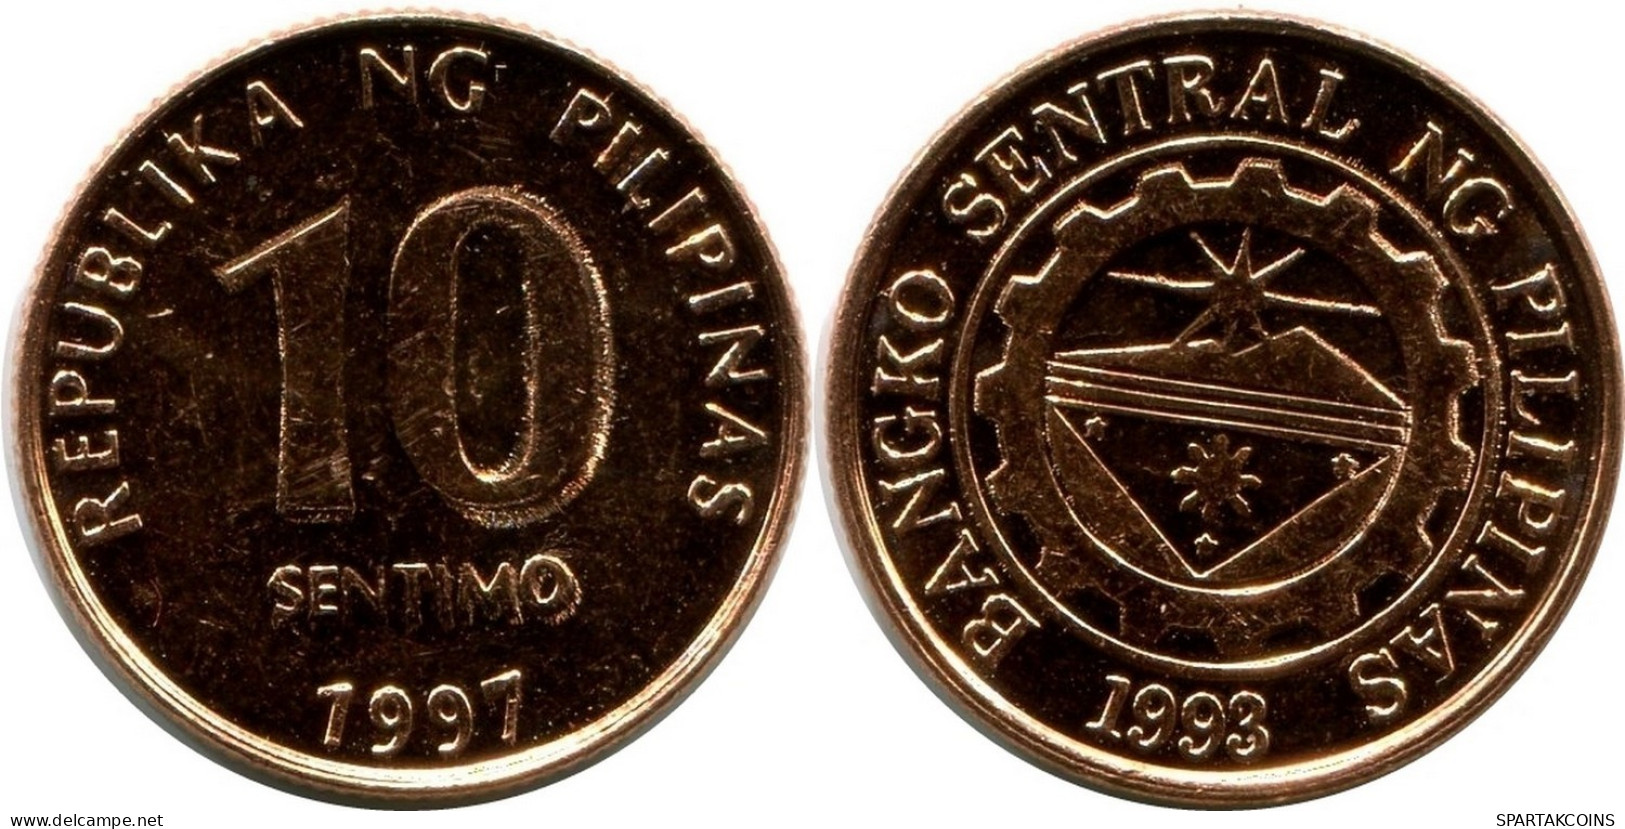 10 CENTIMO 1997 FILIPINAS PHILIPPINES UNC Moneda #M10047.E.A - Philippinen